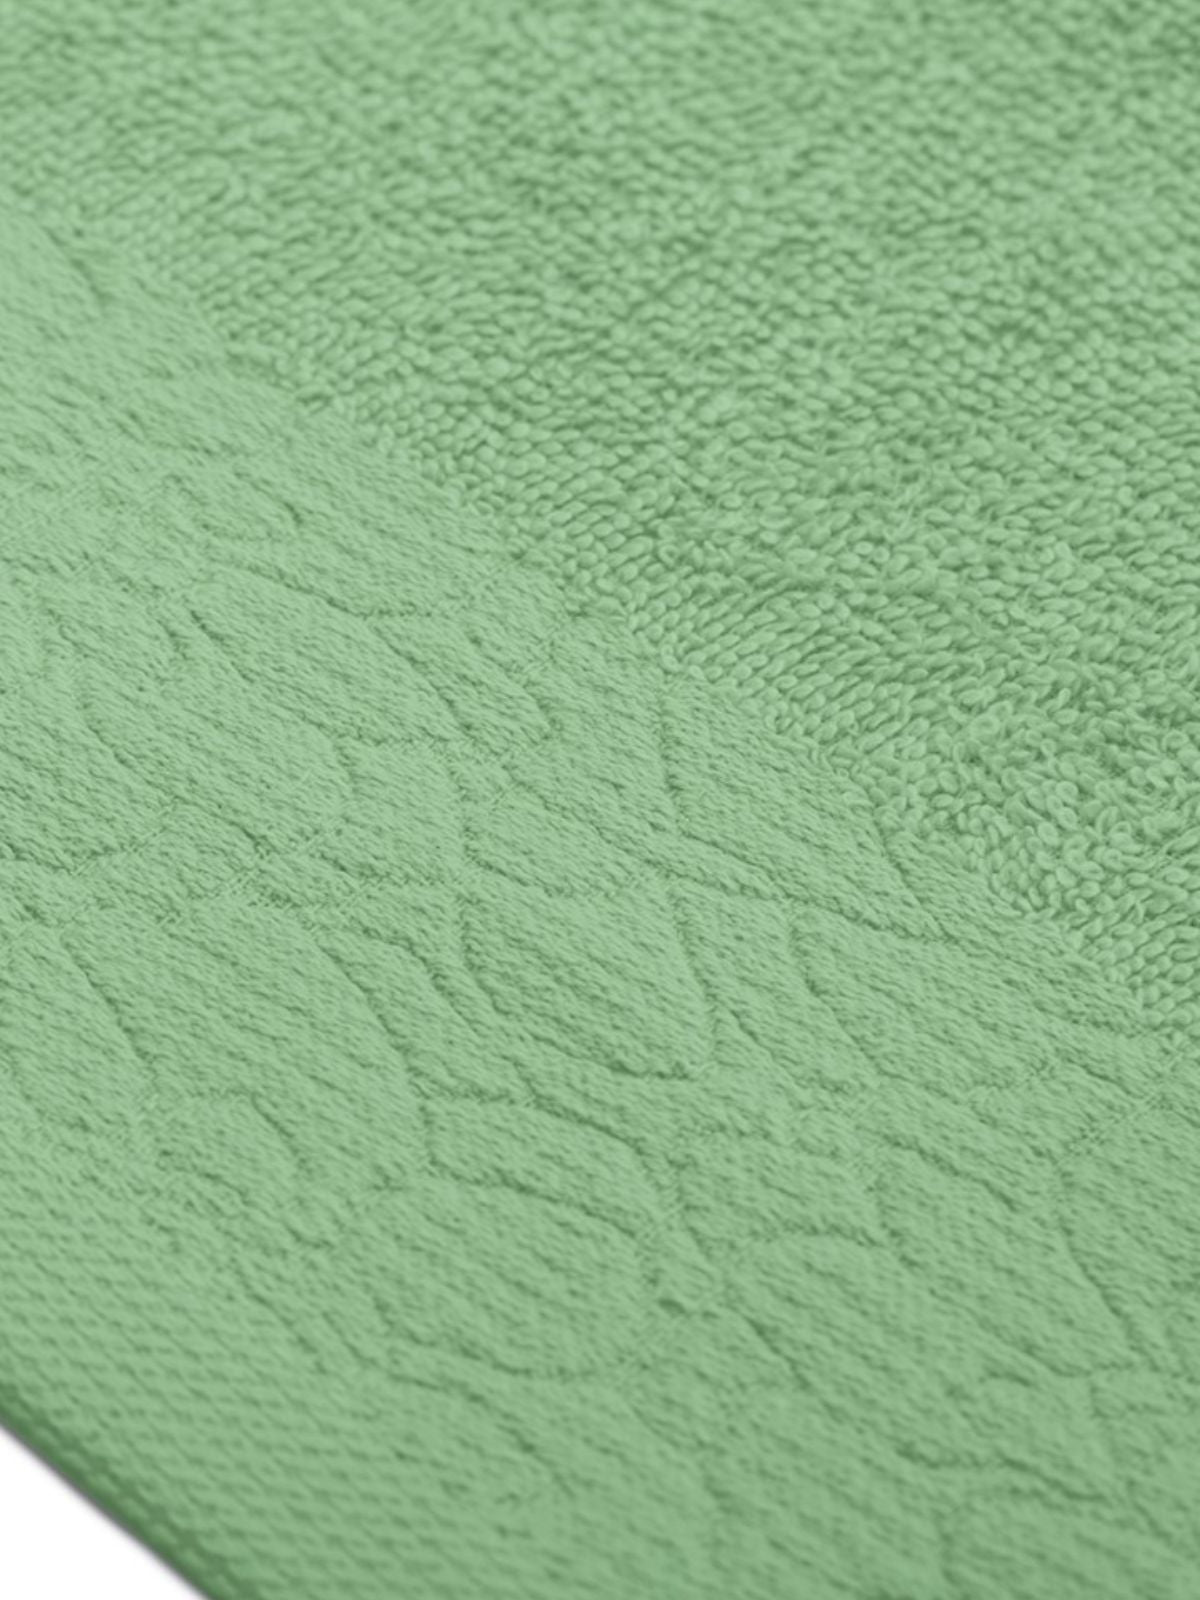 Set 6 Asciugamani da bagno Flos in 100% cotone, colore verde chiaro e scuro-4